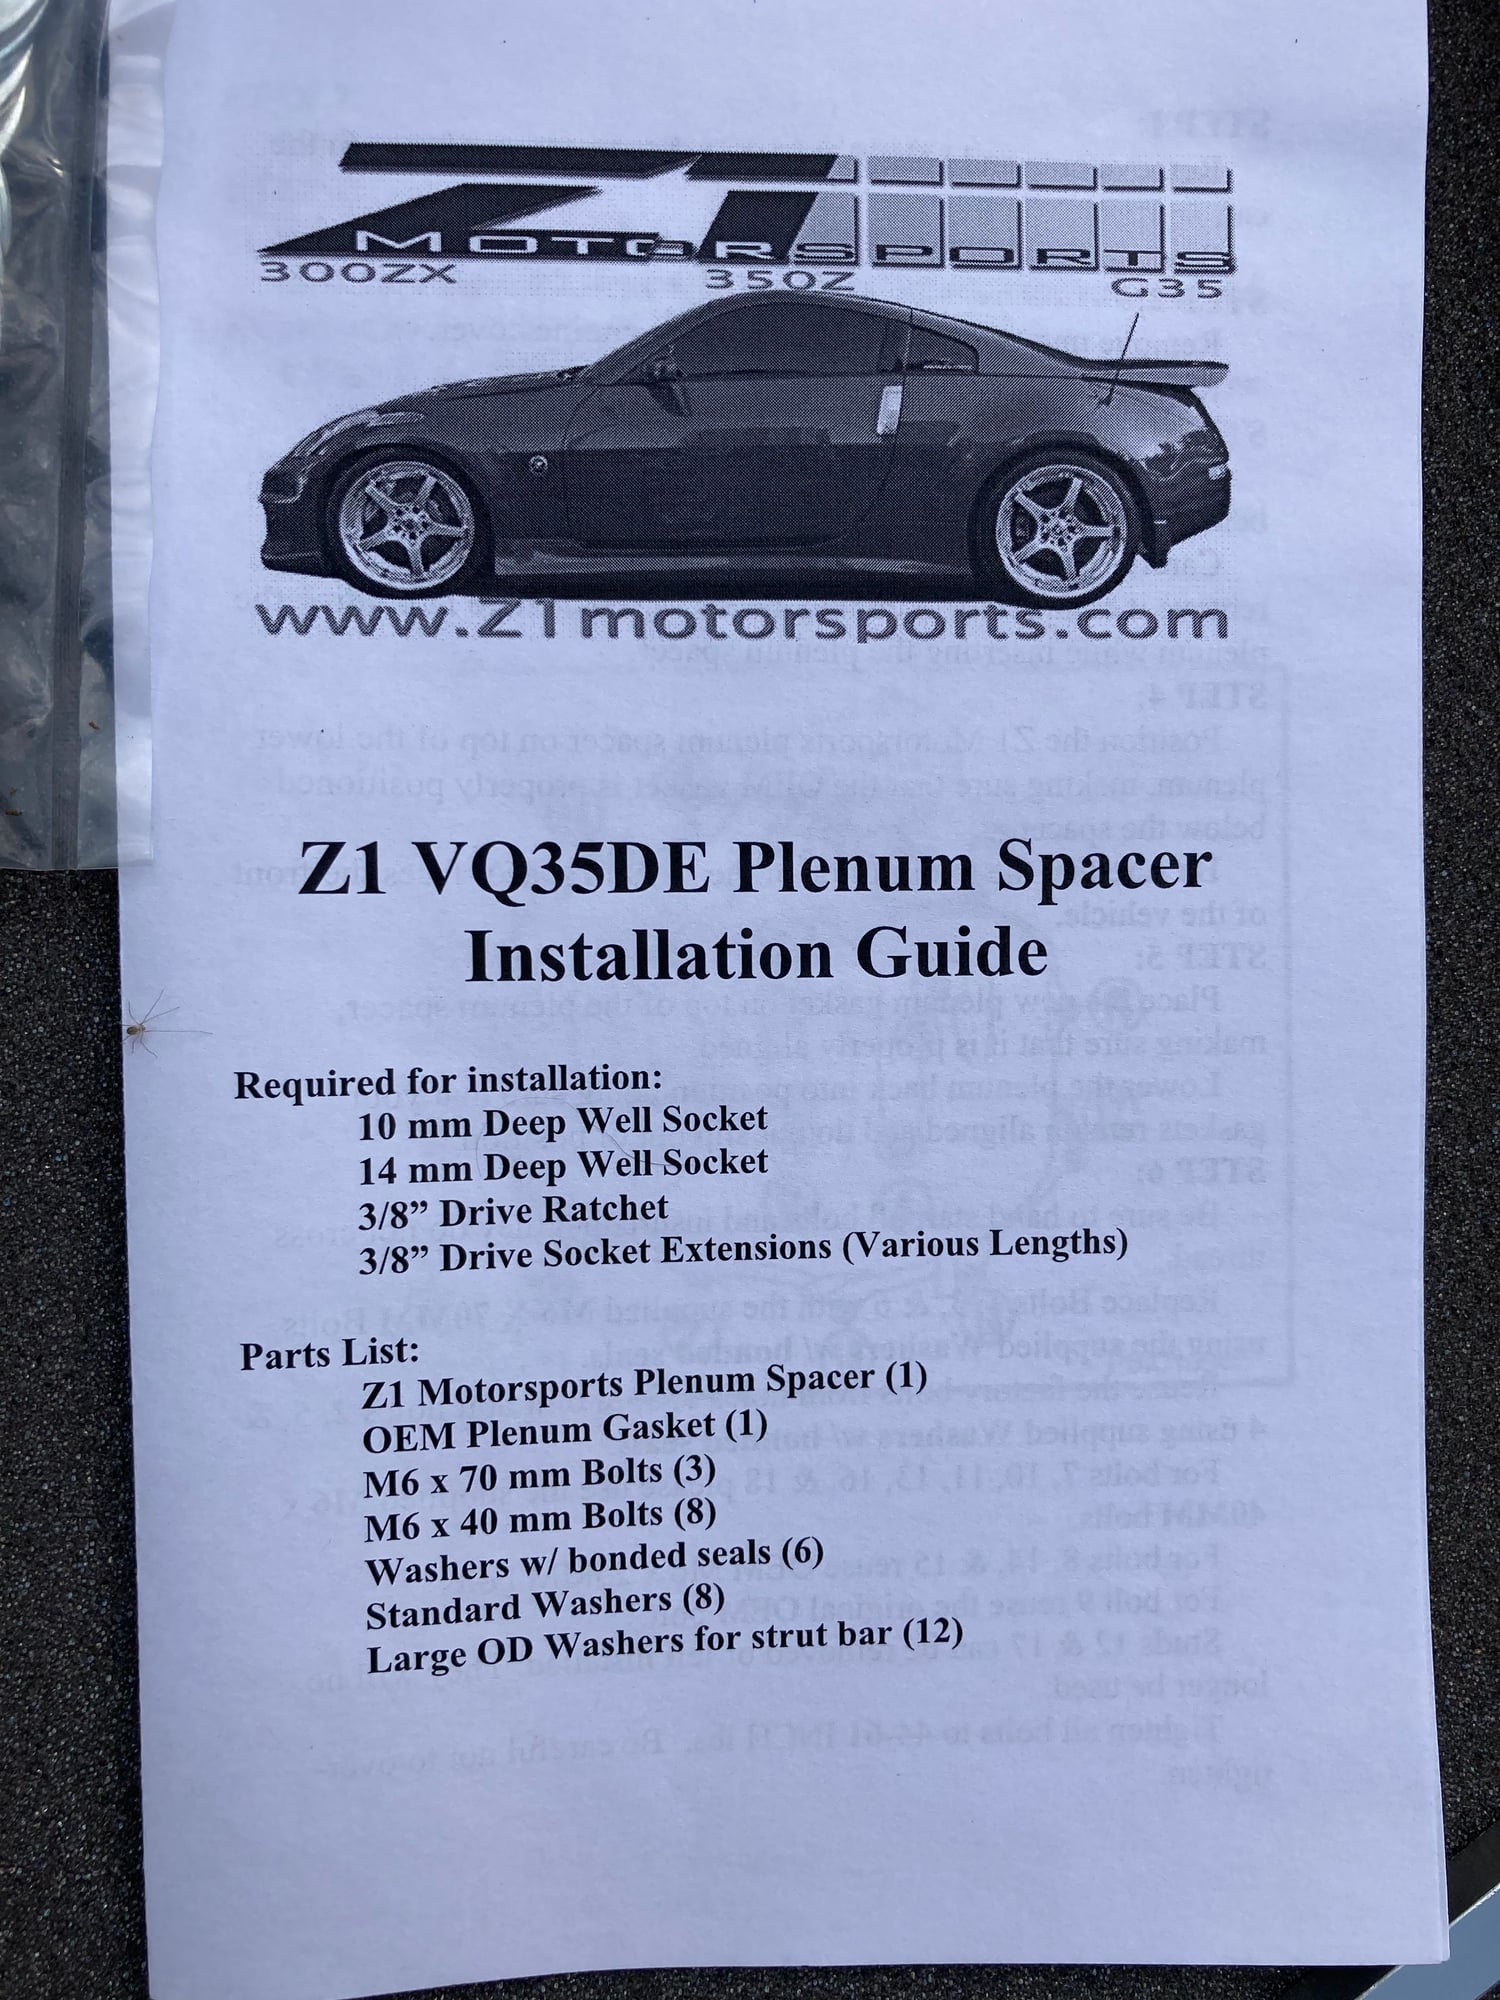 Engine - Intake/Fuel - Z1 350Z / G35 VQ35DE Plenum Spacer - New - 0  All Models - Lathrup Village, MI 48076, United States